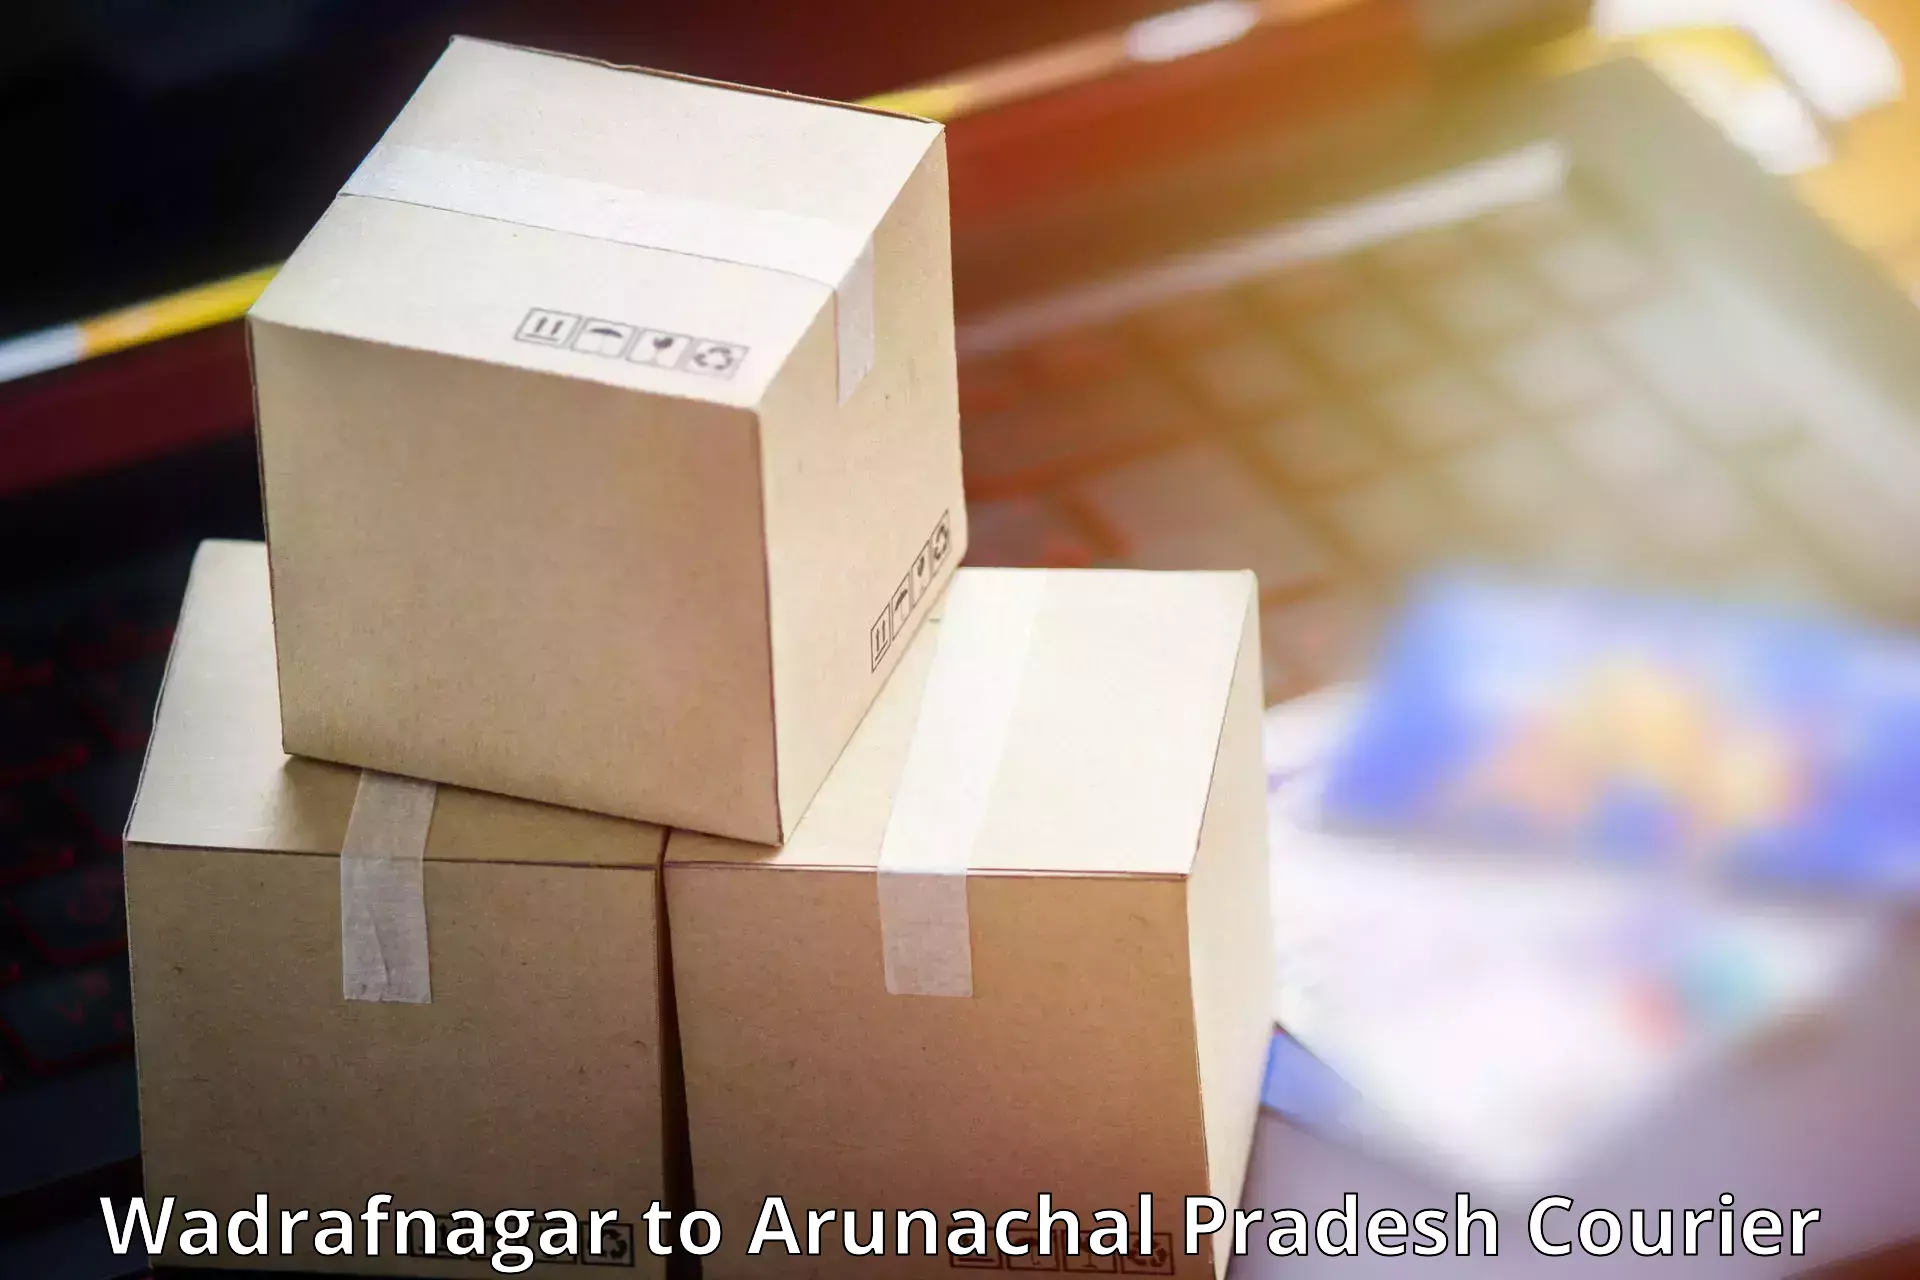 Parcel delivery Wadrafnagar to Bhalukpong